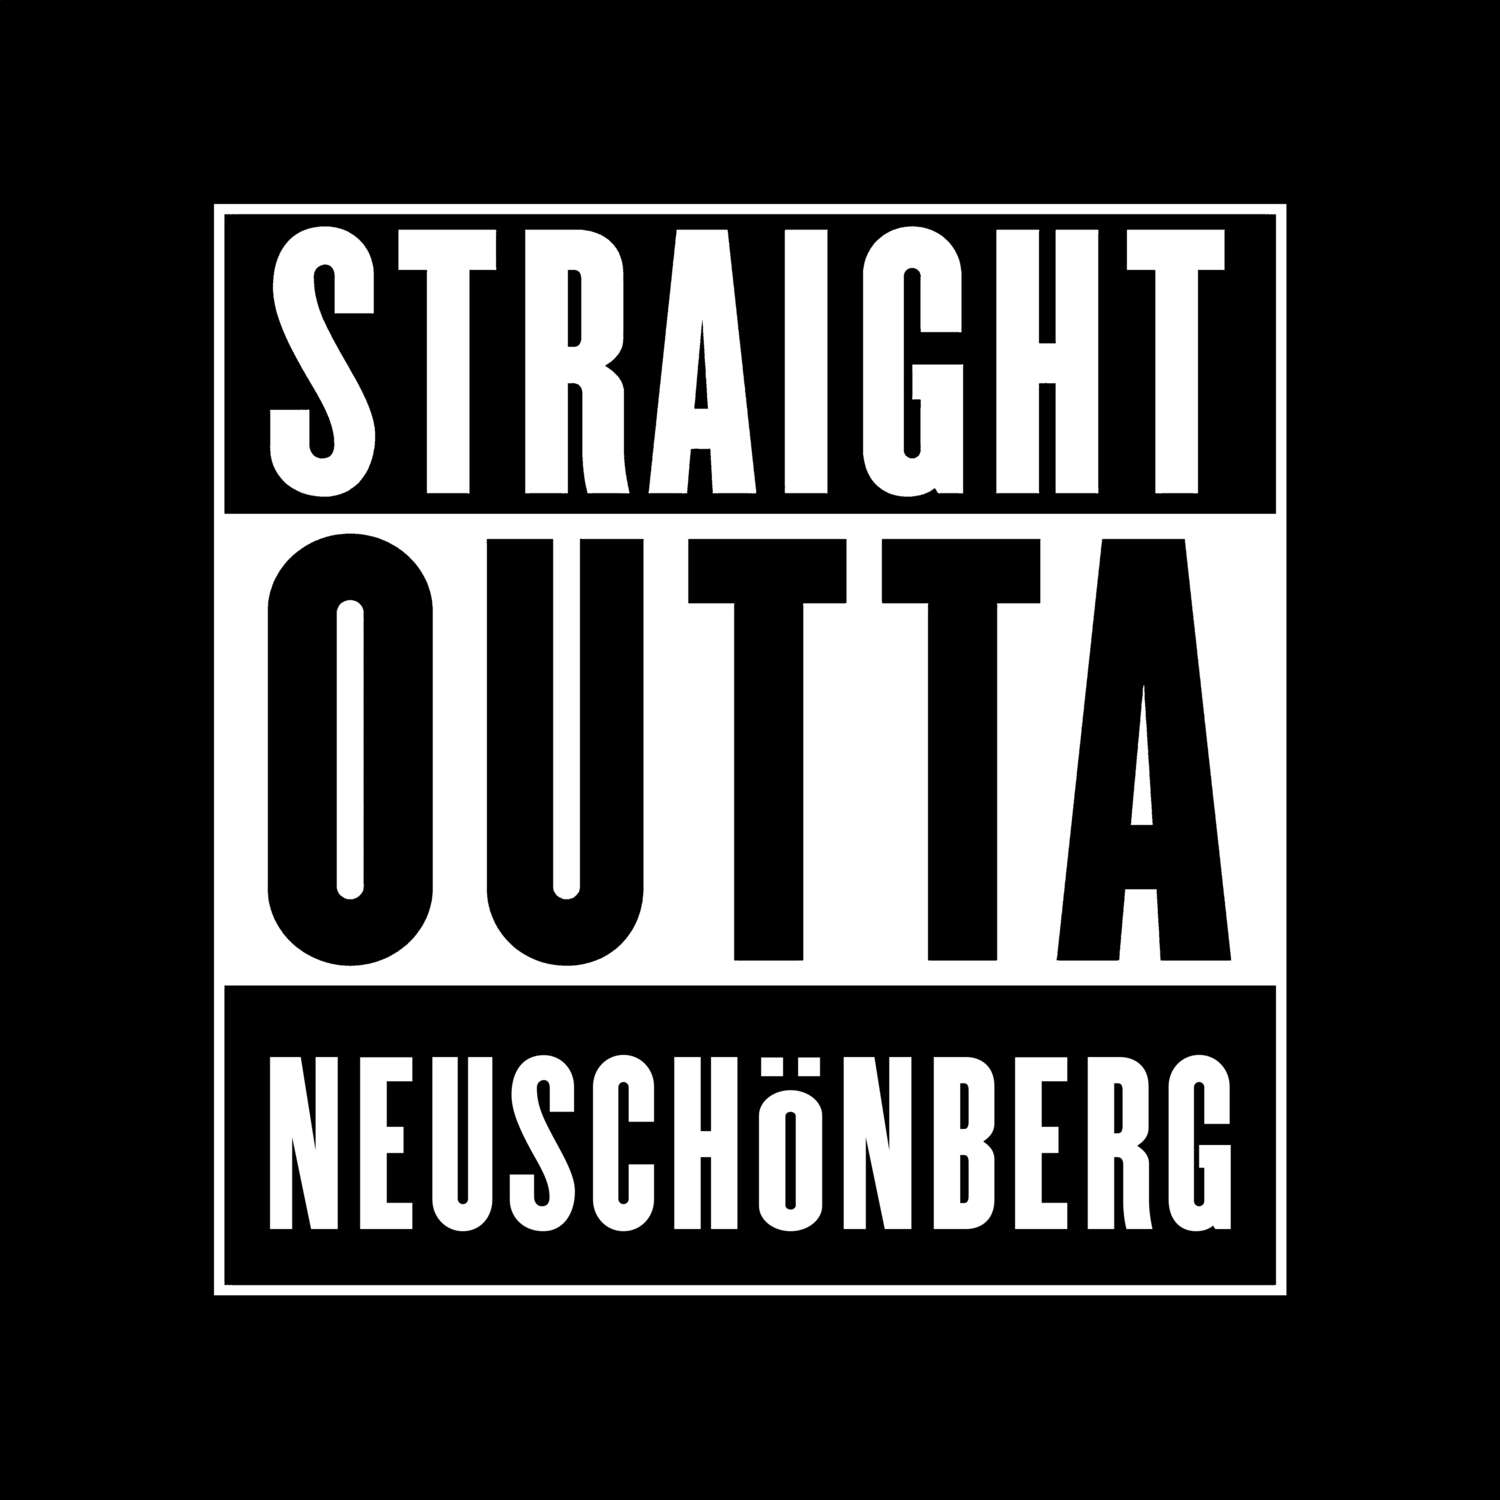 Neuschönberg T-Shirt »Straight Outta«